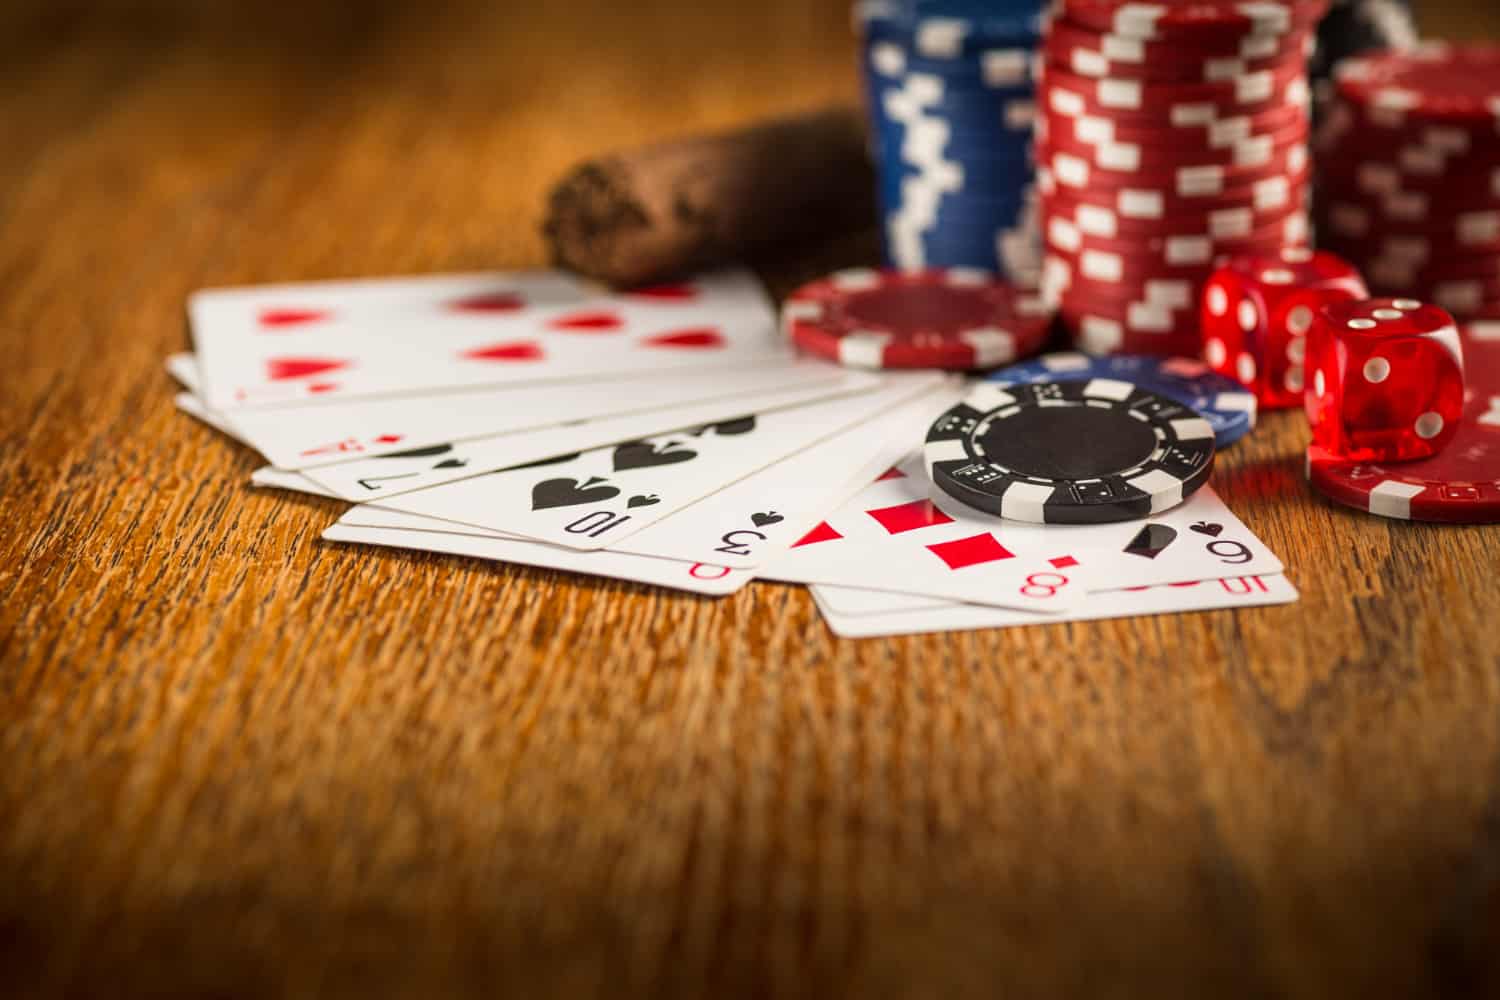 Melhores sites para jogar pôquer online em 2021 | da697f41 cartas2 | slot machine | jogar pôquer online slot machine